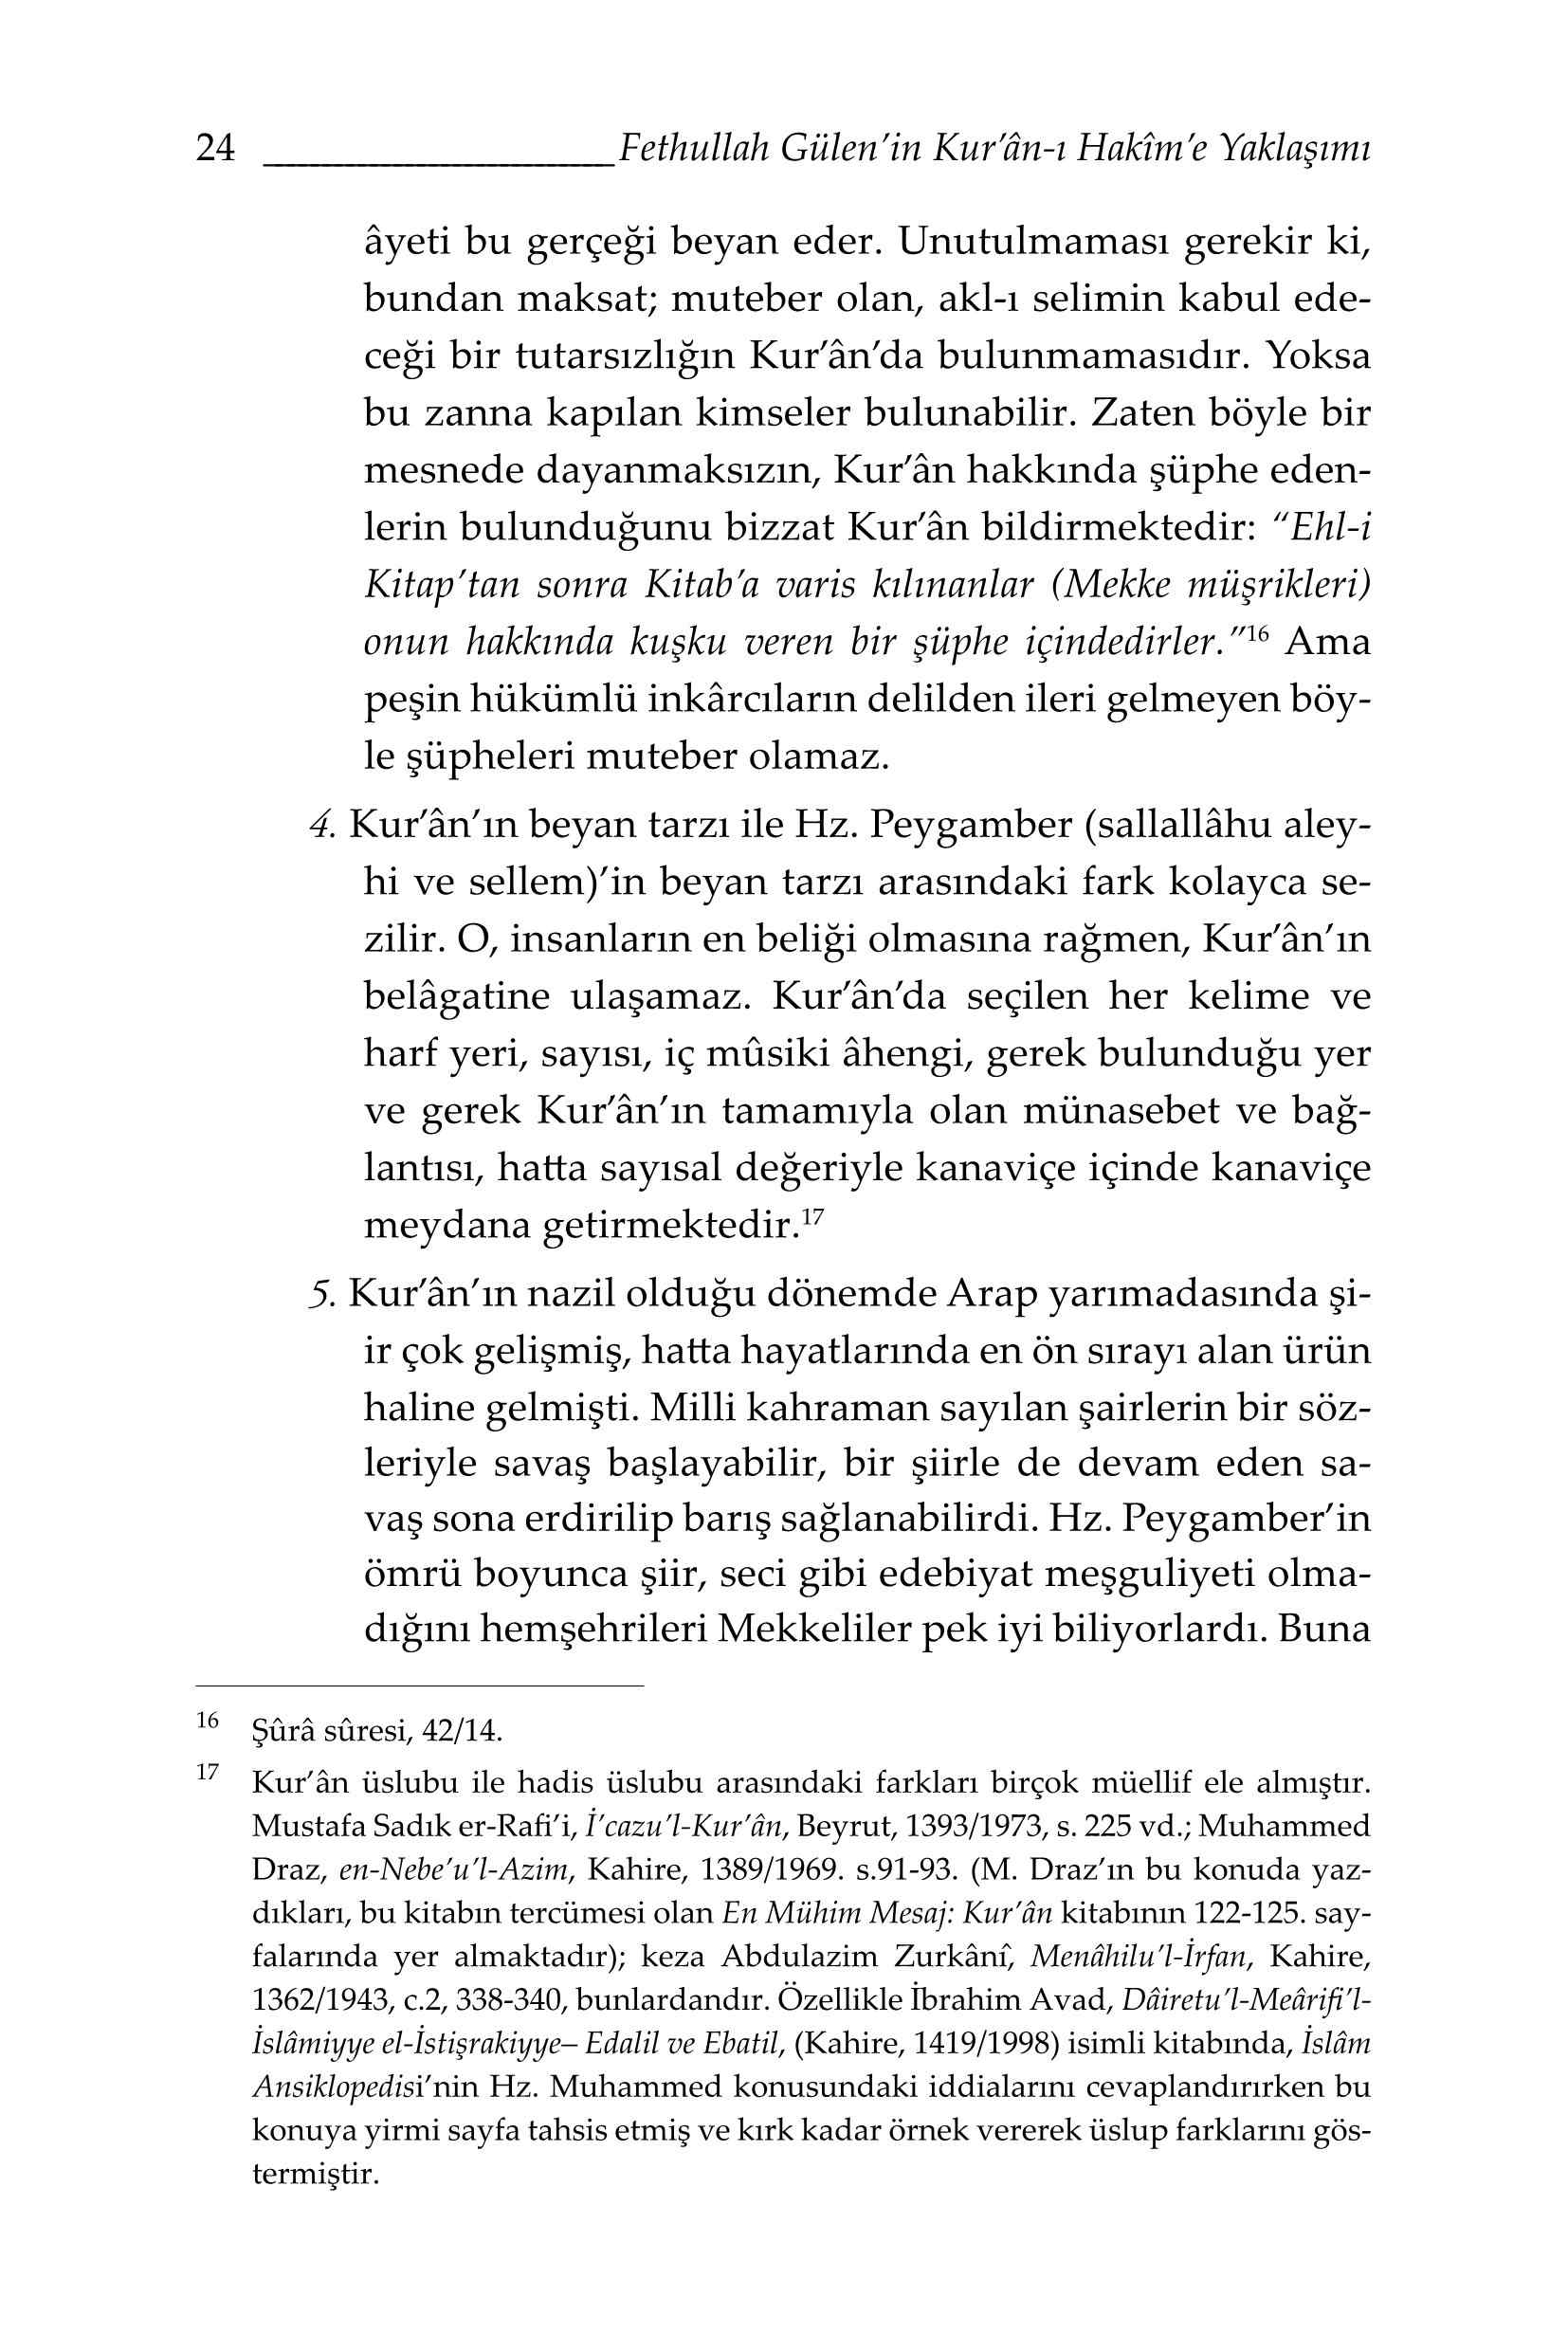 Suat Yıldırım - Fethullah Gülenin Kuran-ı Hakime Yaklaşımı.pdf, 185-Sayfa 